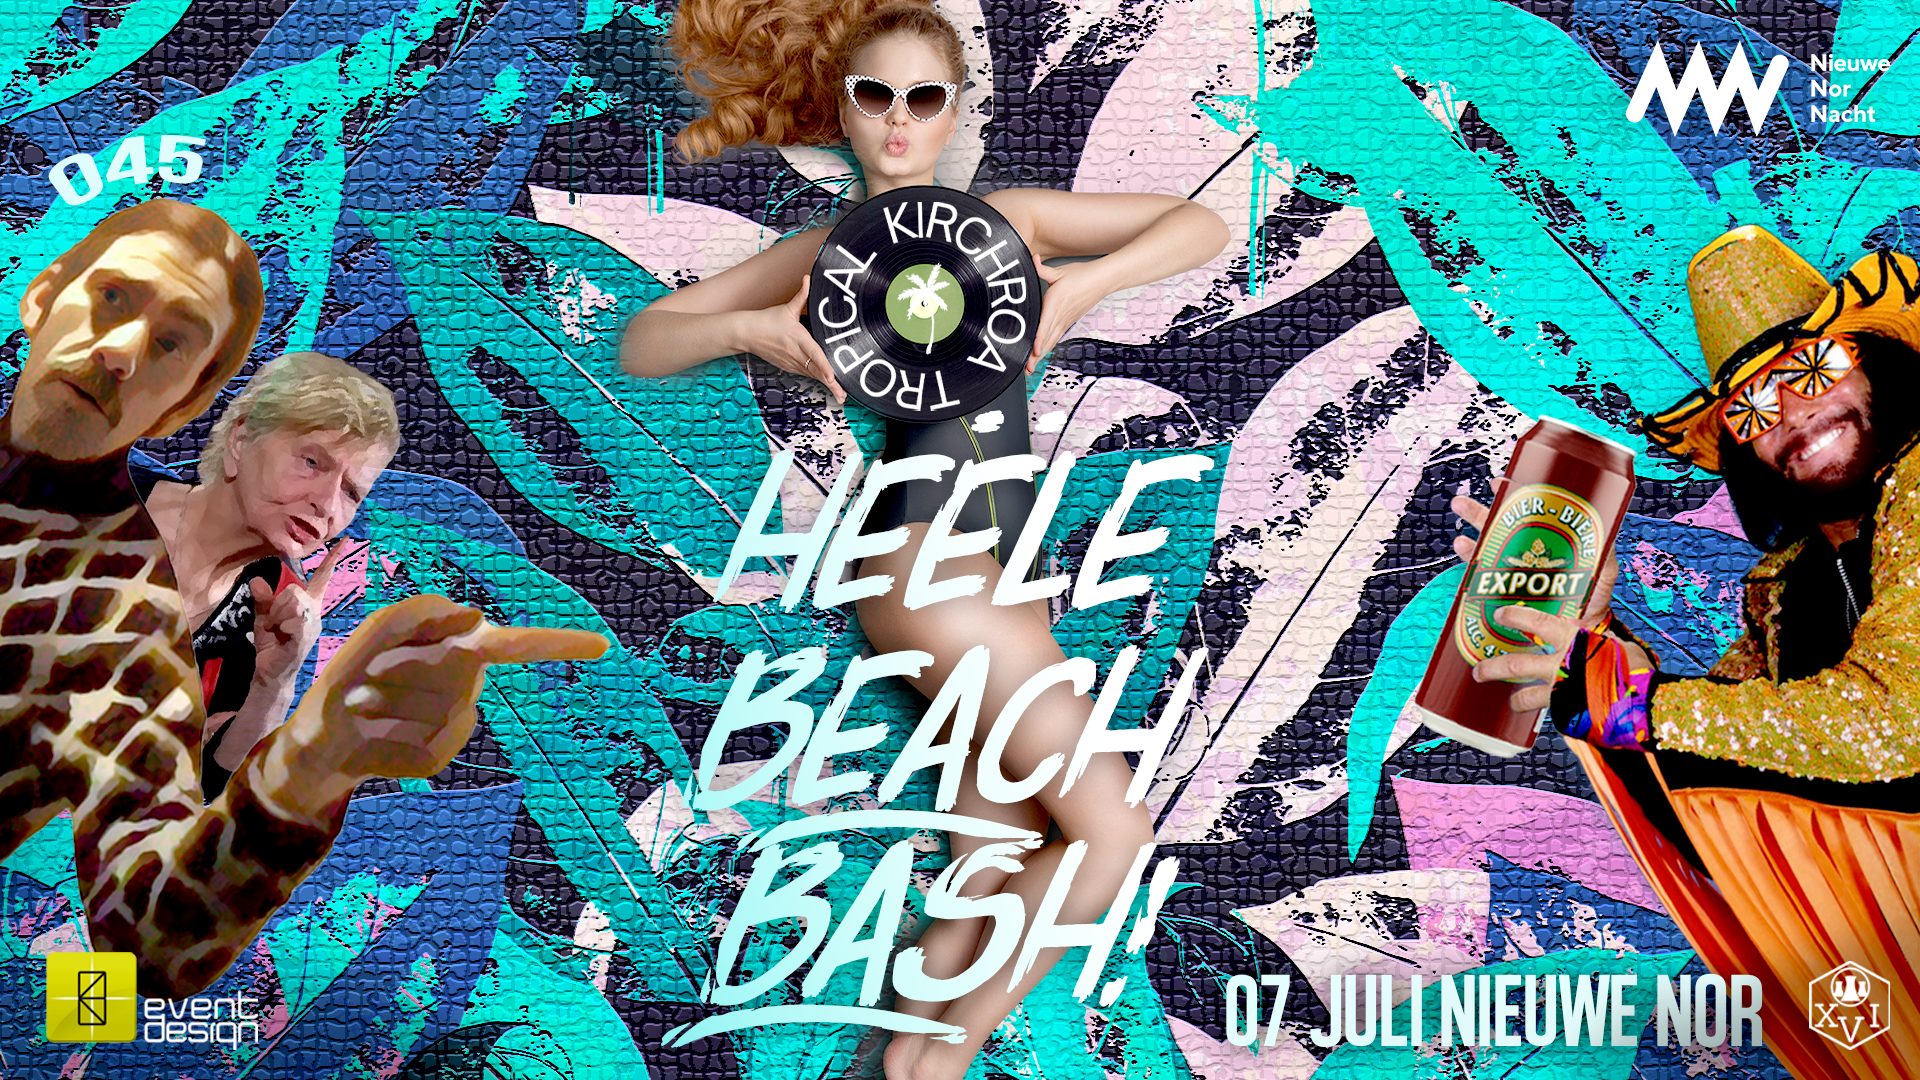 Kirchroa Tropical presents: Heële Beach Bash!